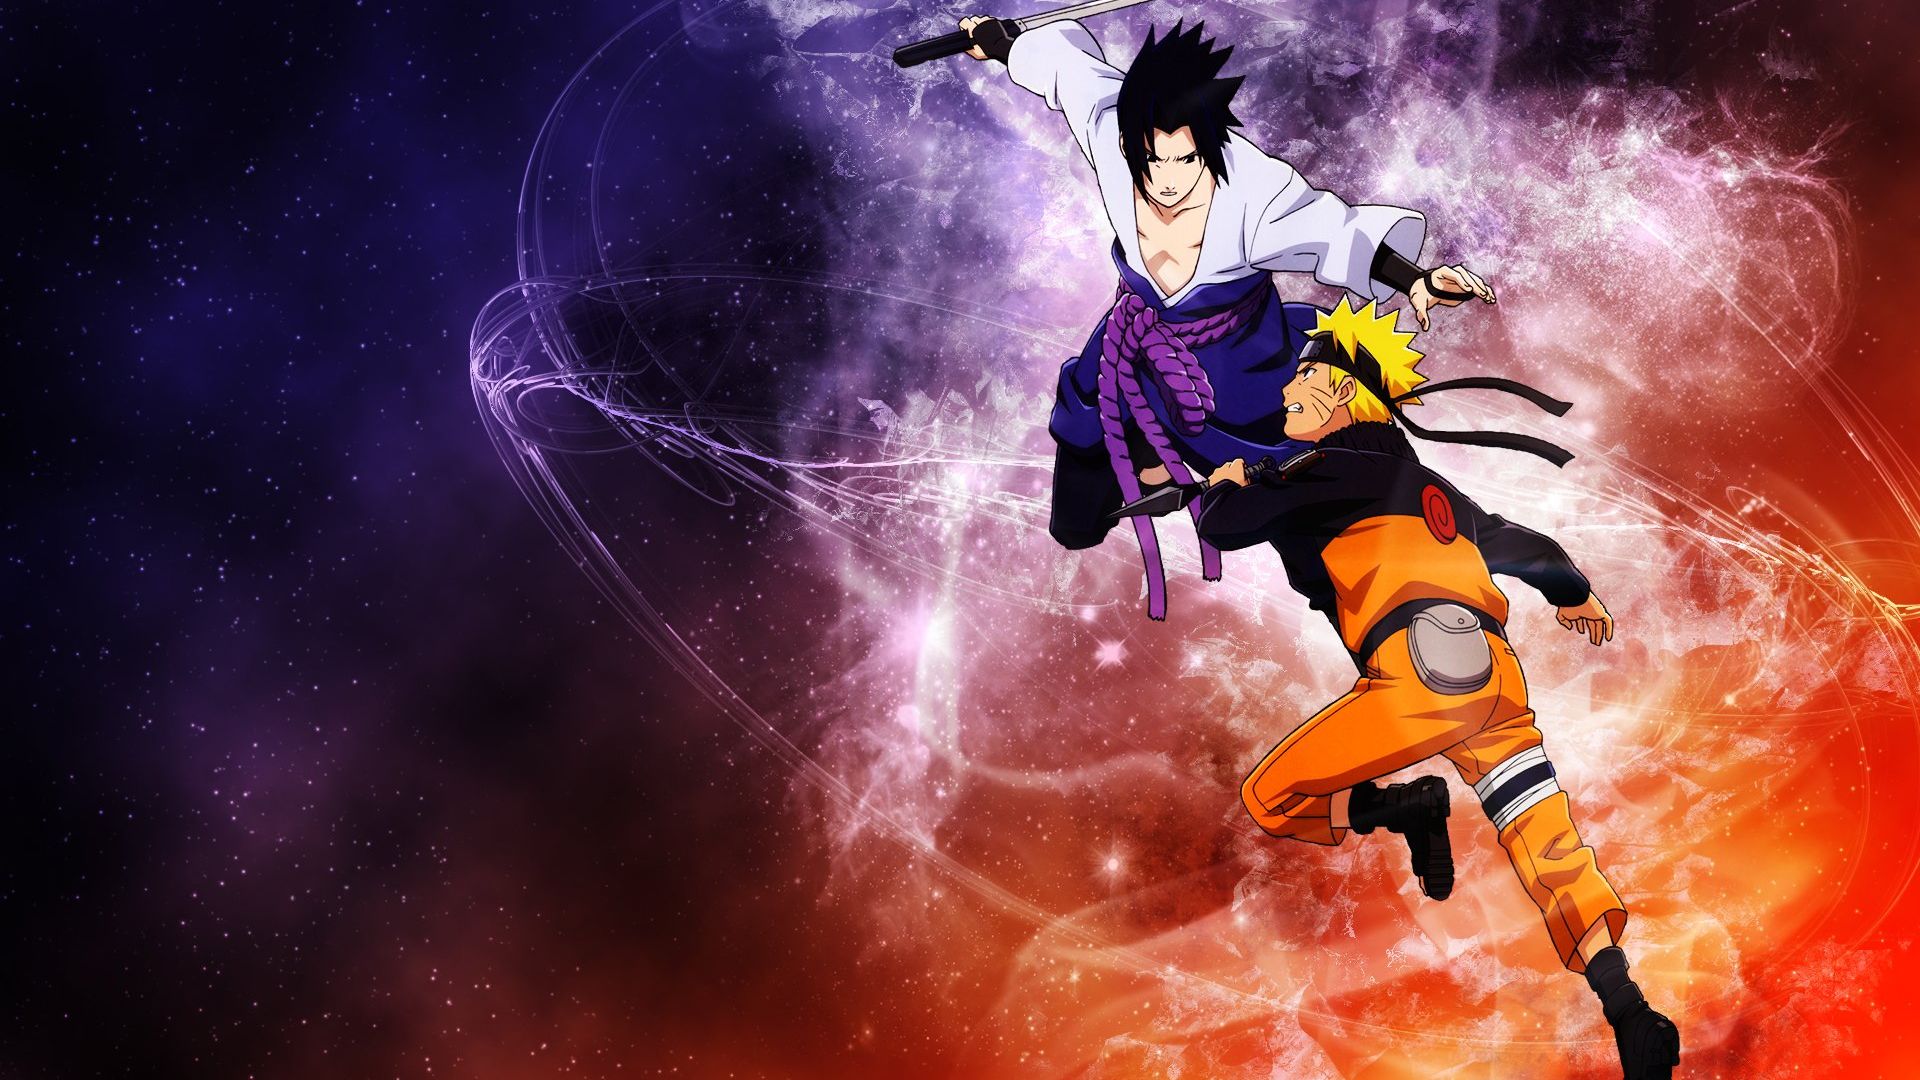 Wallpaper Naruto Gambar Naruto Keren gambar ke 20